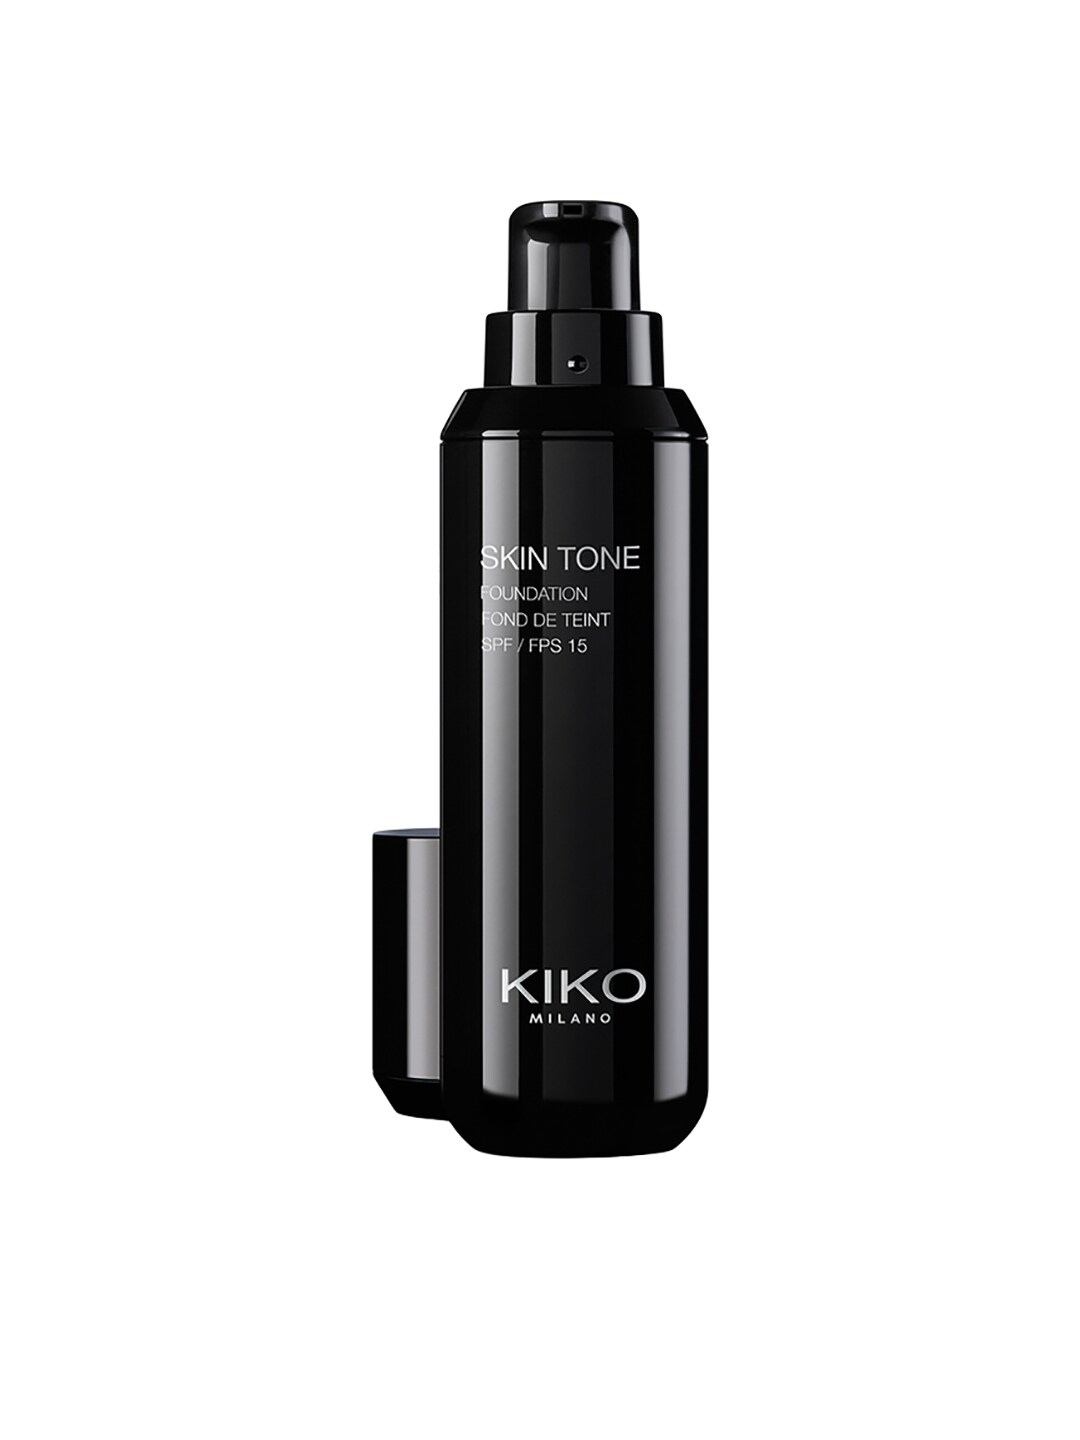 KIKO MILANO Skin Tone Foundation SPF 15 N 40 30ml Price in India